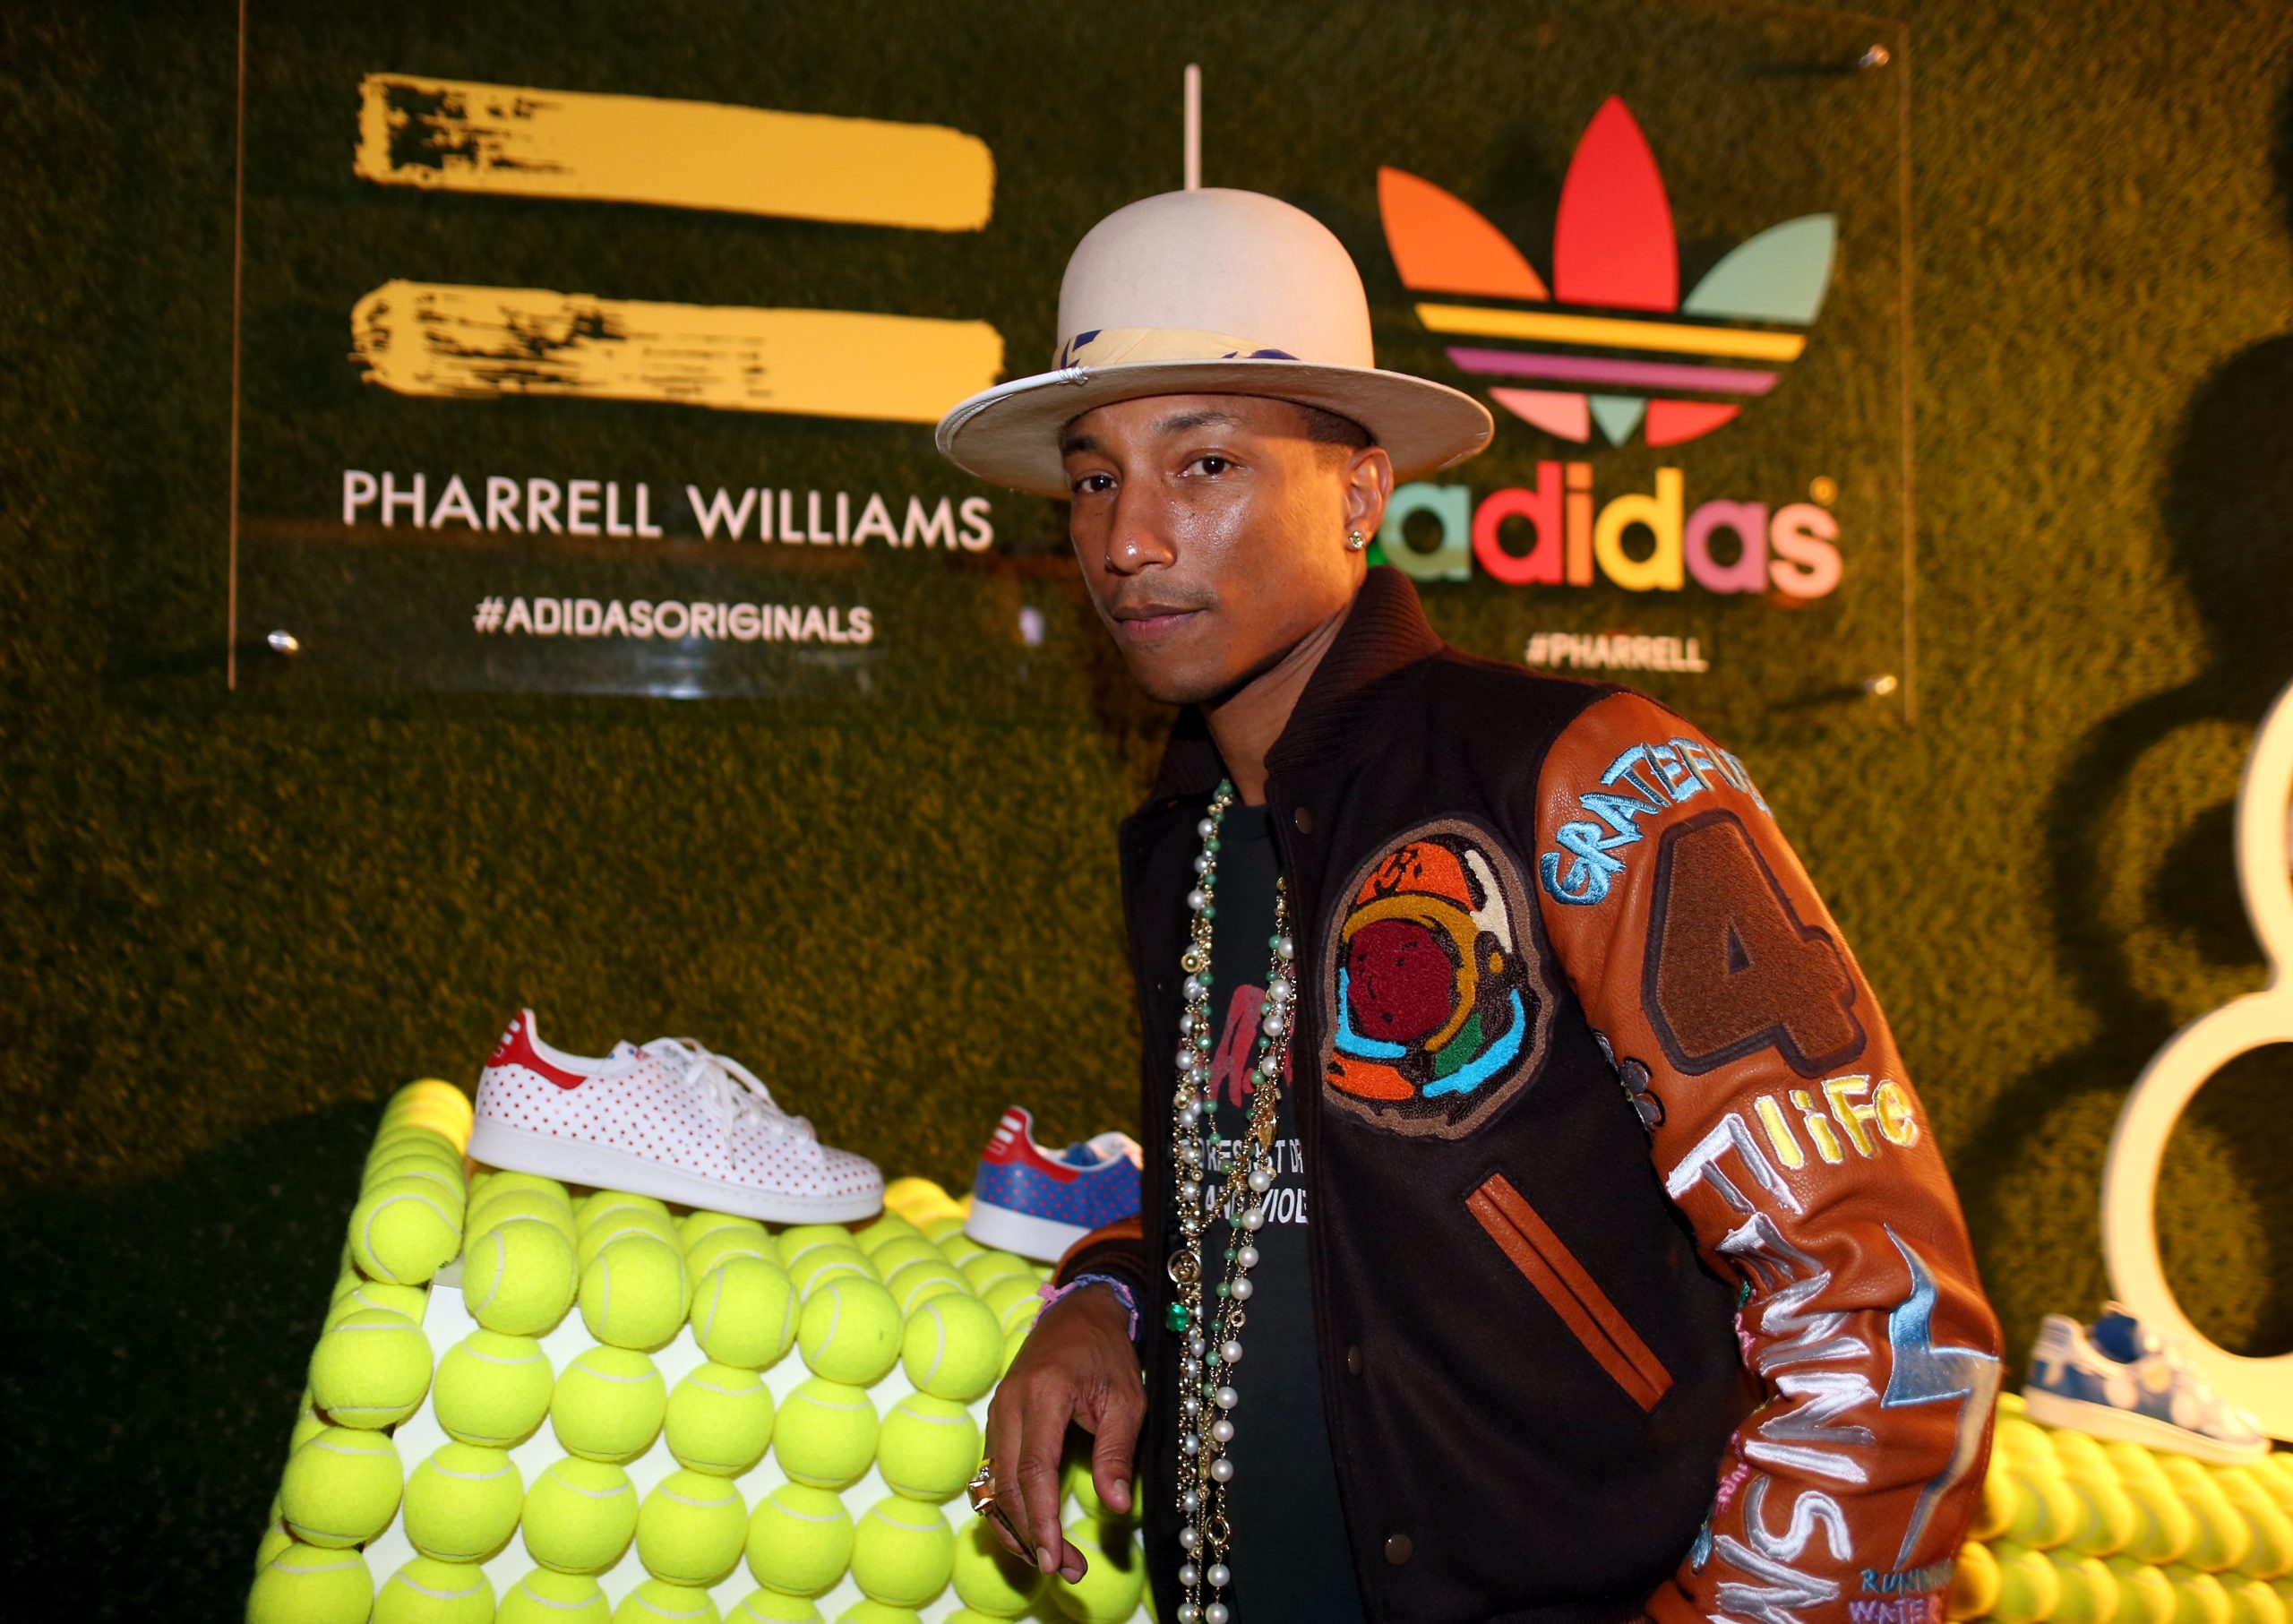 Checa la espectacular nueva colaboración entre Adidas y Pharrell Williams